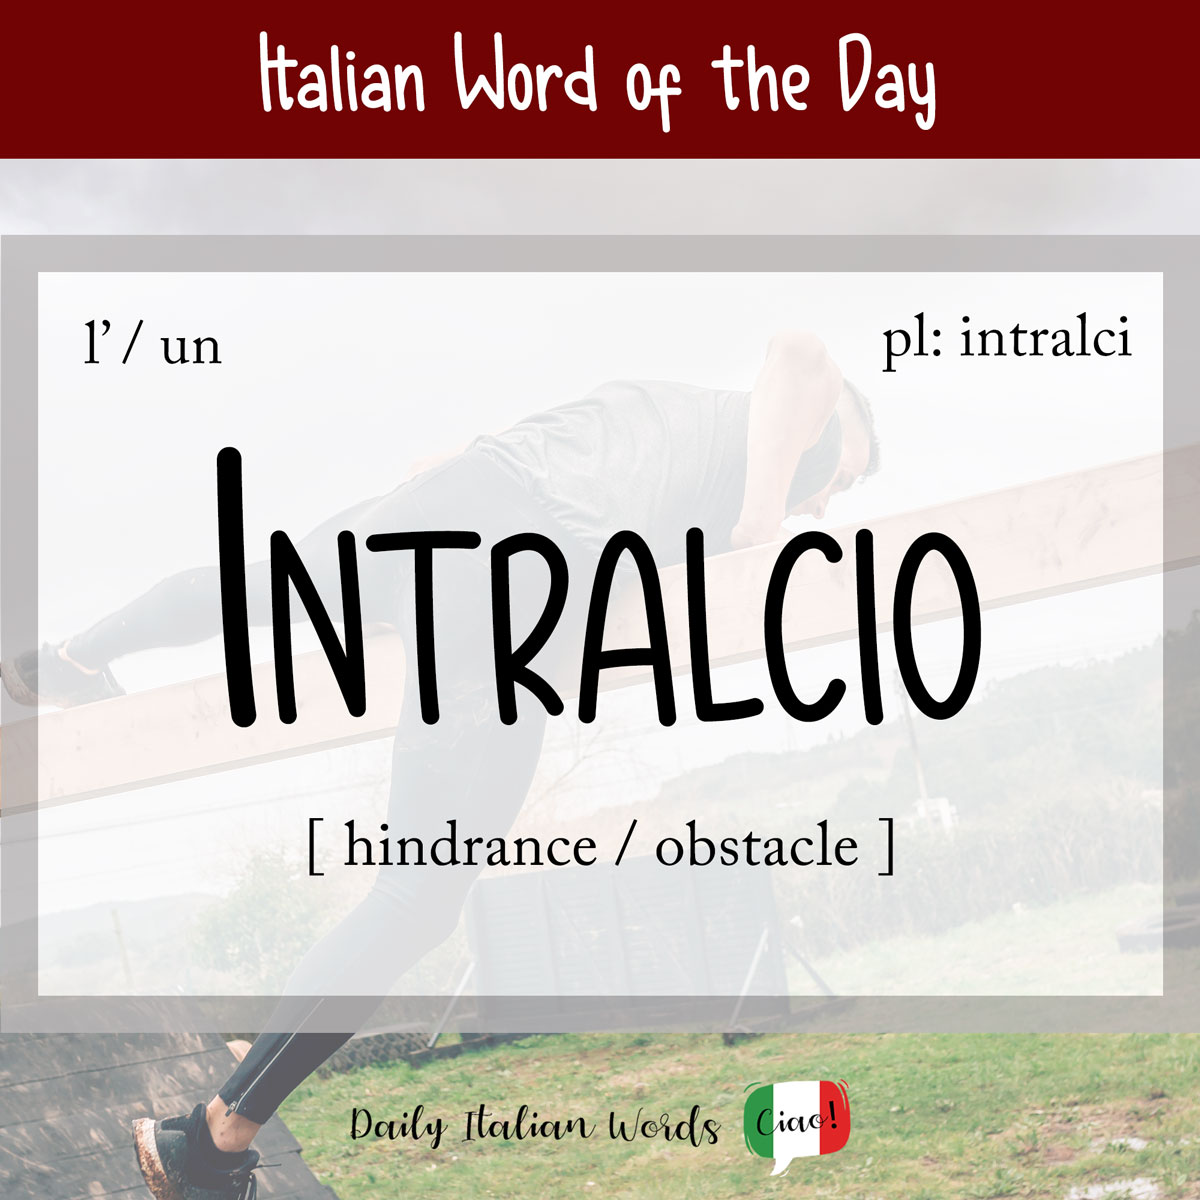 Italian word "intralcio"